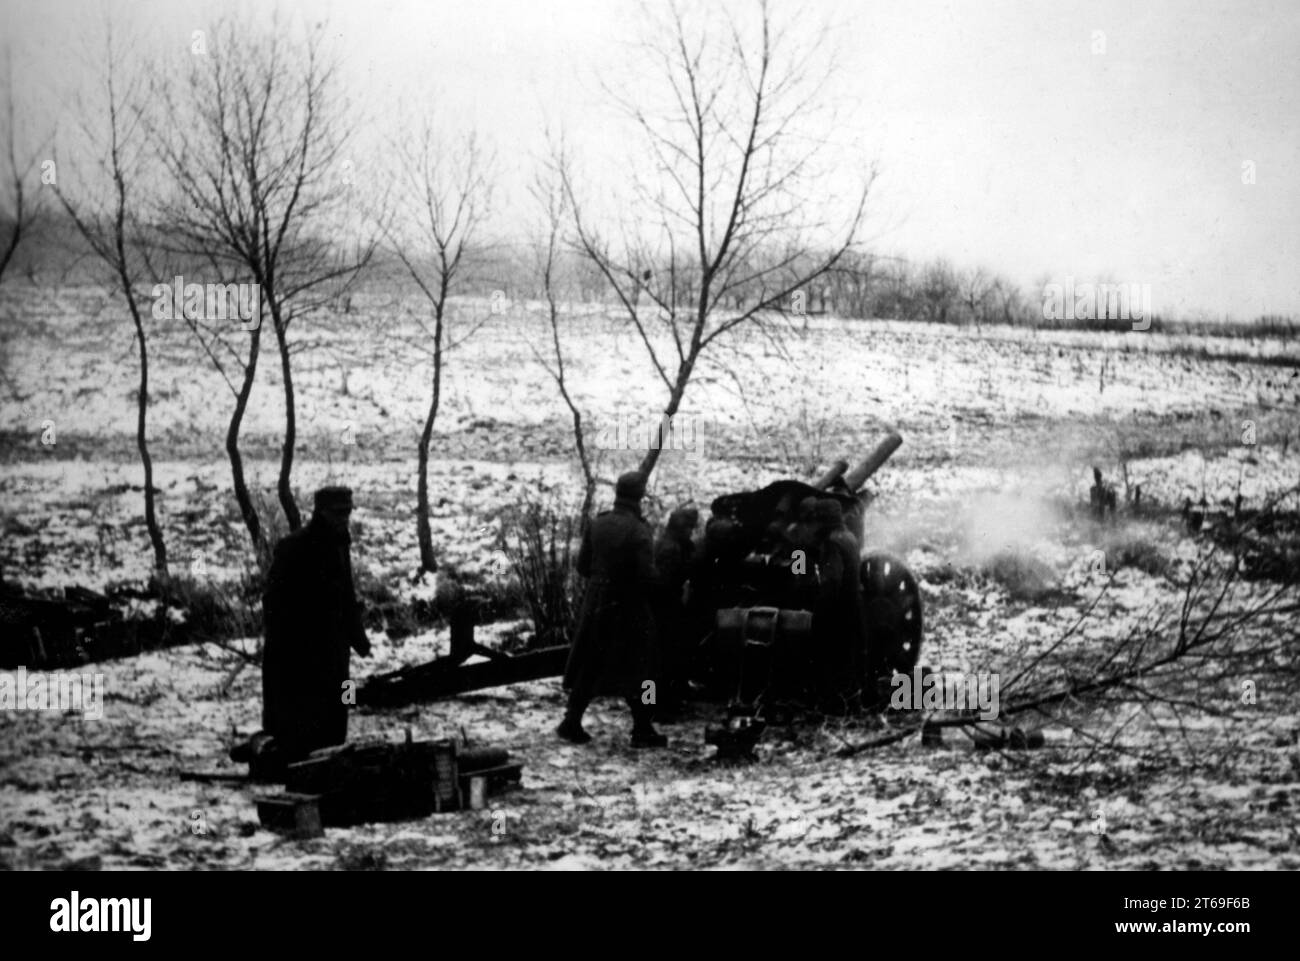 Un obice da 10,5 cm 18 sparò sulla posizione sovietica nell'area di Donets nella sezione meridionale del fronte orientale vicino a Troitskoye. Foto: Knödler [traduzione automatica] Foto Stock